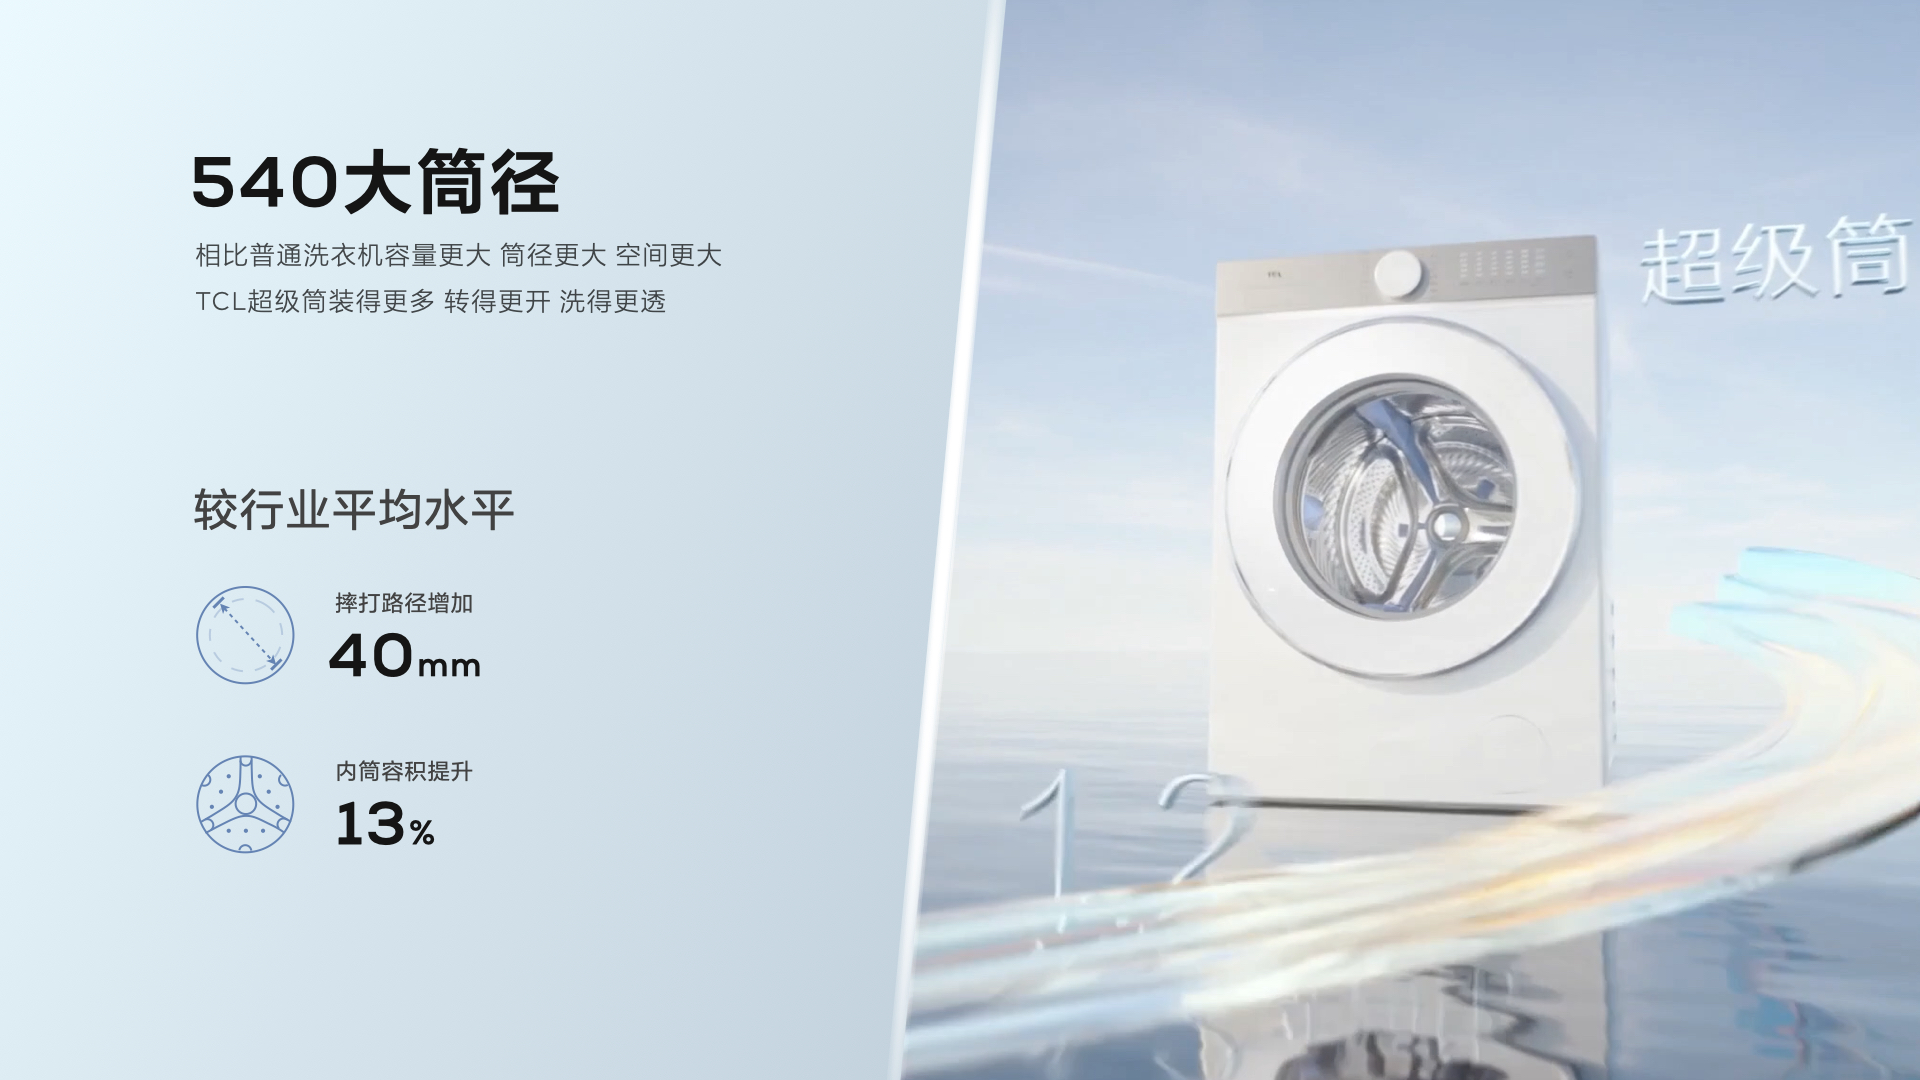 TCL发布超级筒洗衣机，首创超级筒科技，打破洗净能力上限 